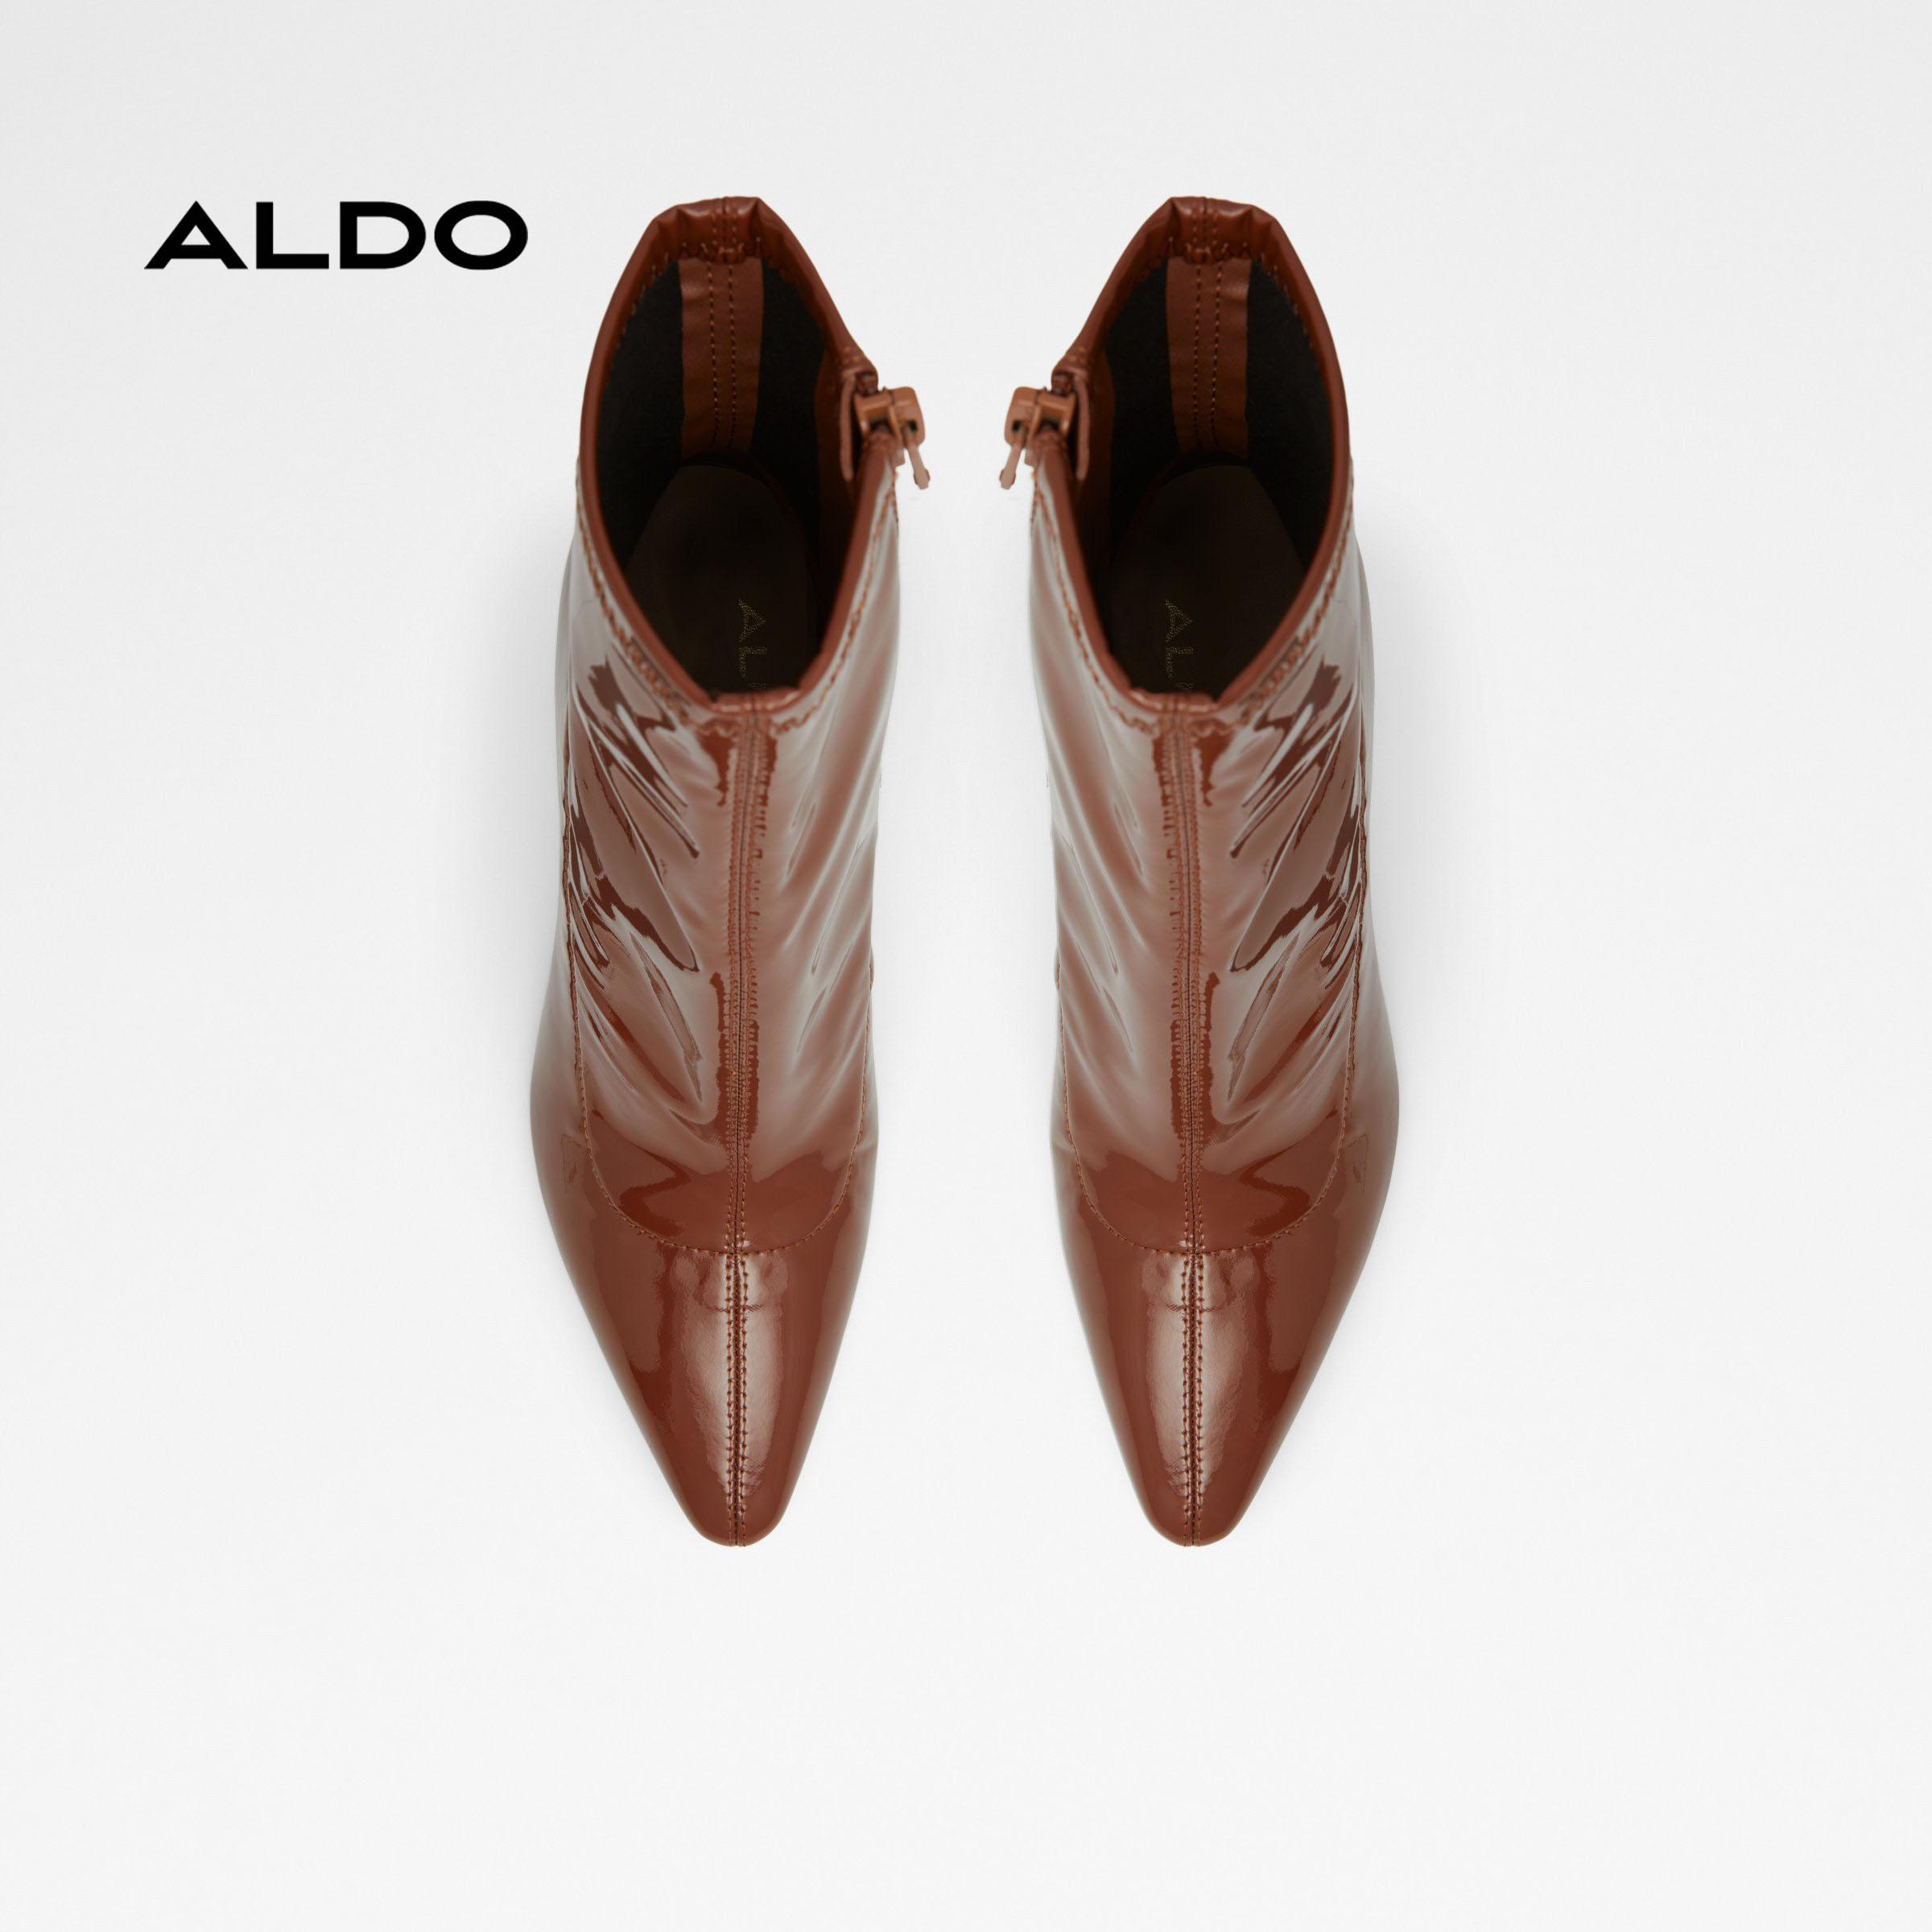 Boot cao gót nữ Aldo AURYA